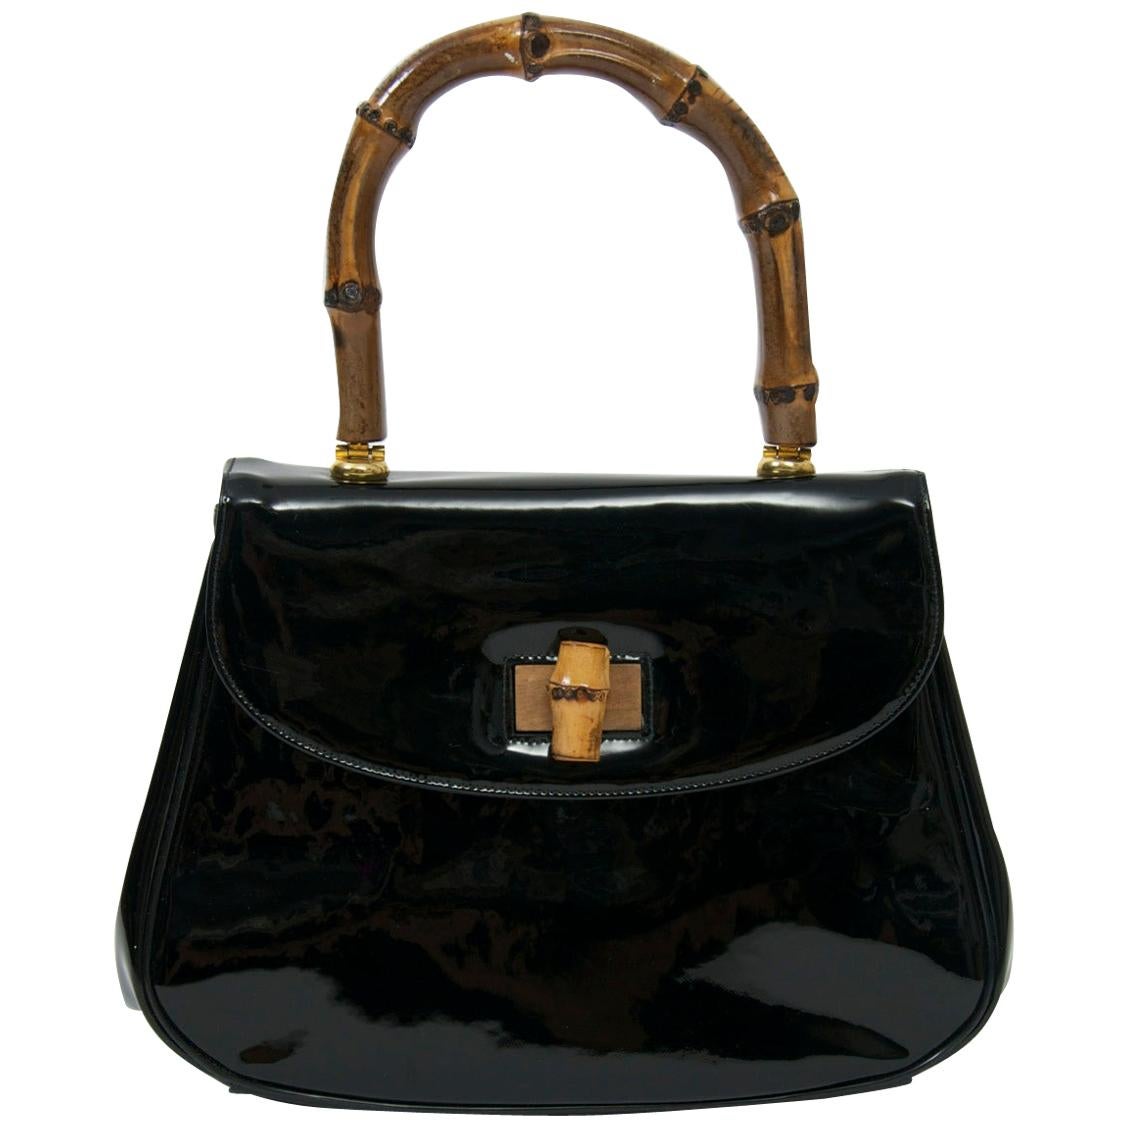 Black Patent Gucciesque Handbag